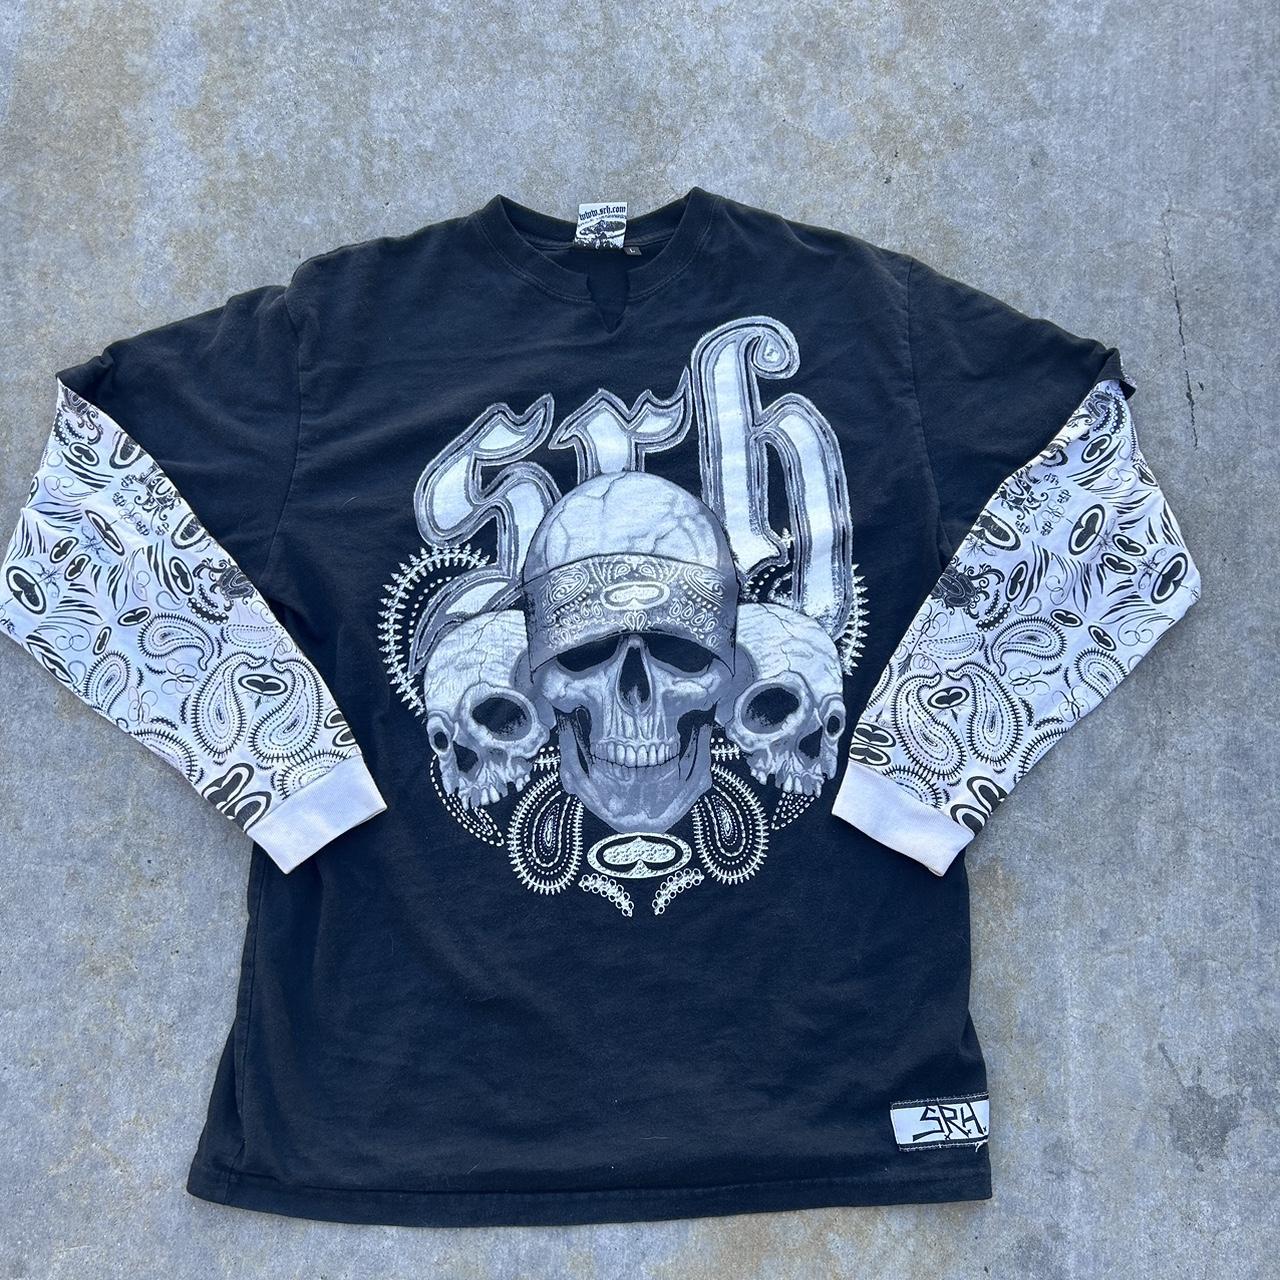 Urban Outfitters Y2k Skulls Long Sleeve Tee in Black for Men